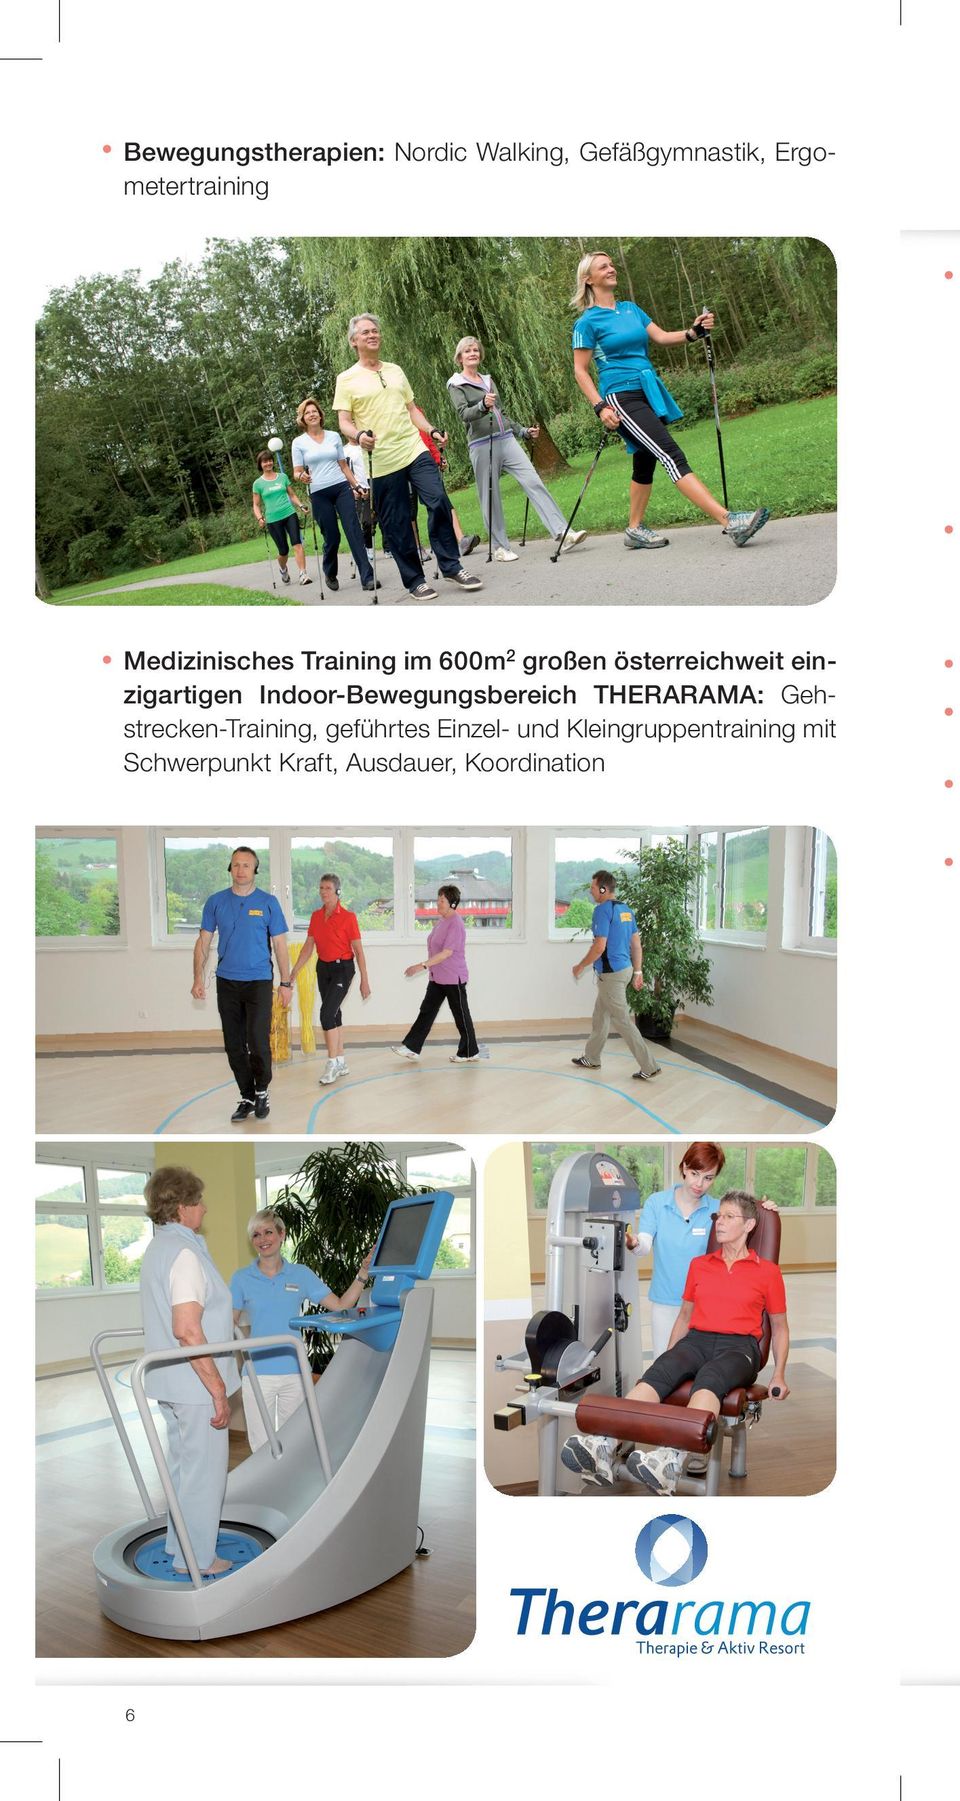 Indoor-Bewegungsbereich THERARAMA: Gehstrecken-Training, geführtes